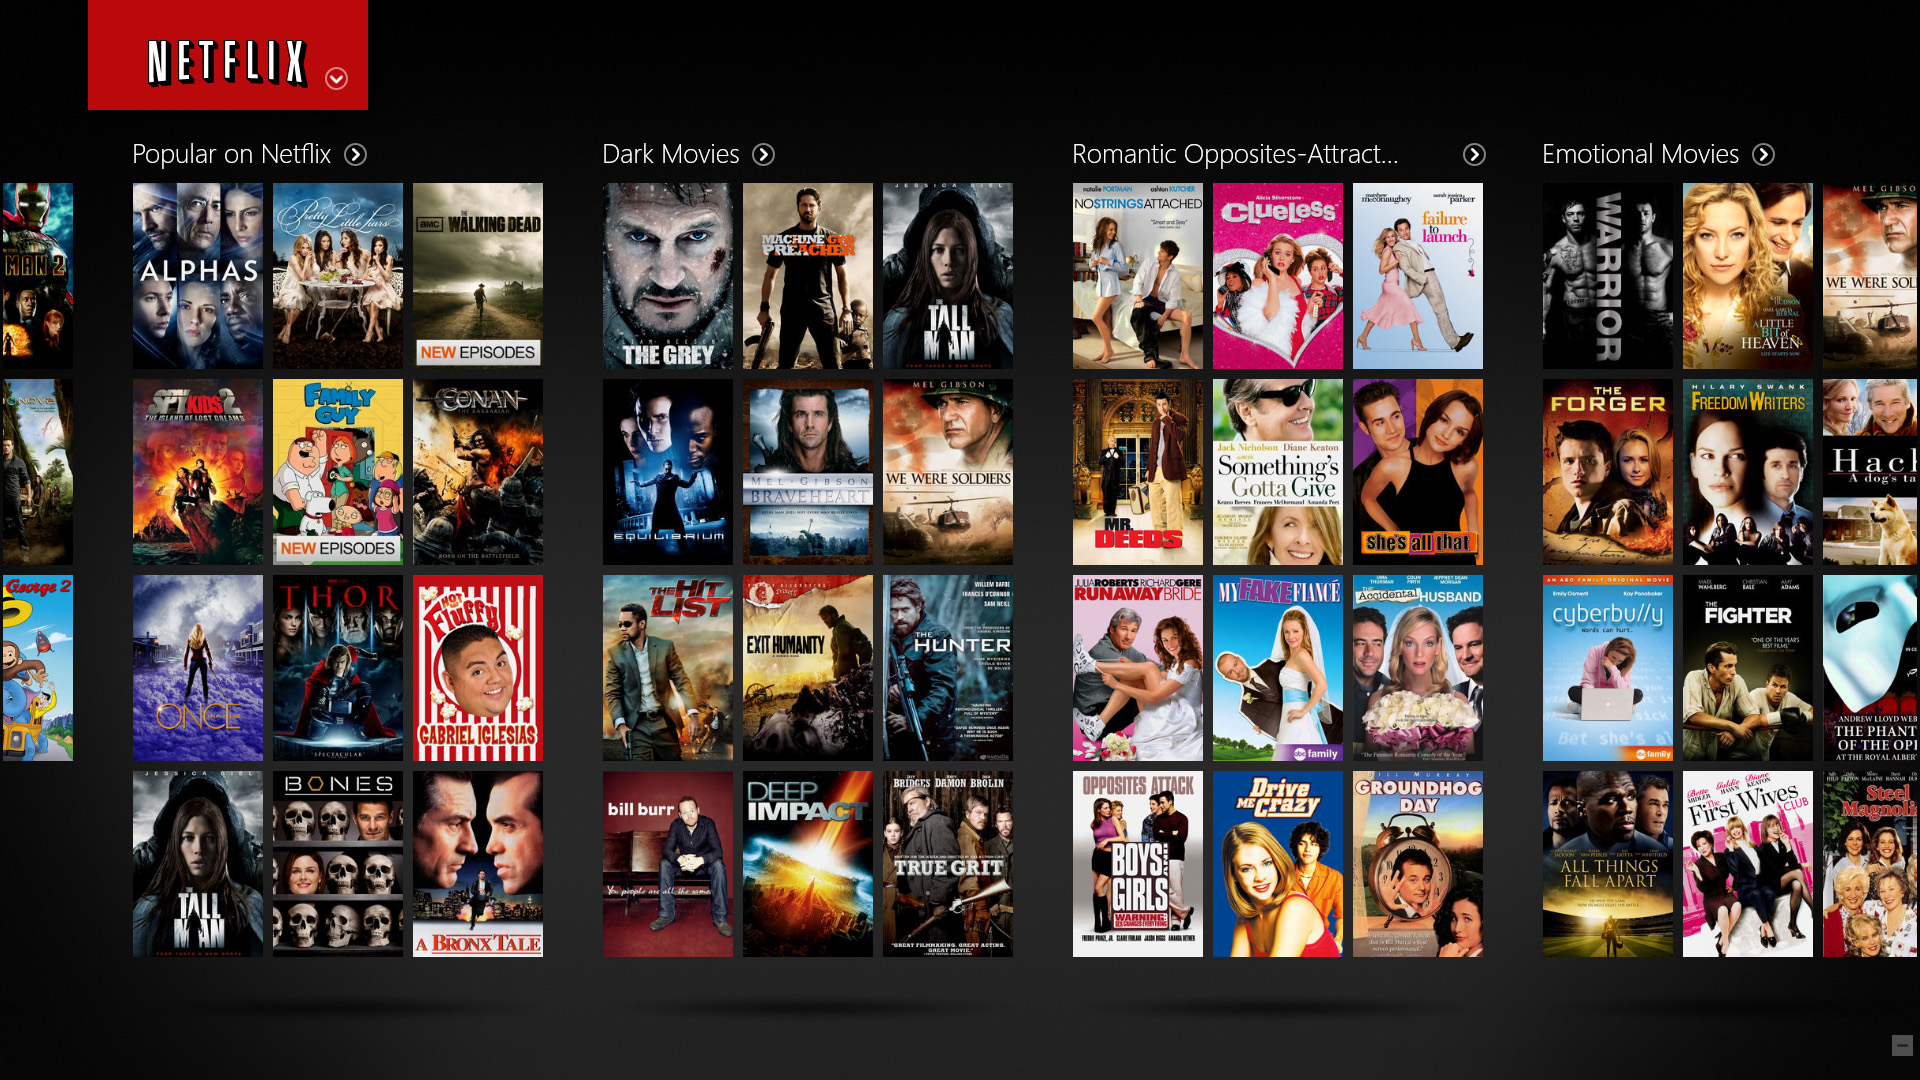 Samsung UHD TV´s streamen 4K Videos von Netflix und Amazon